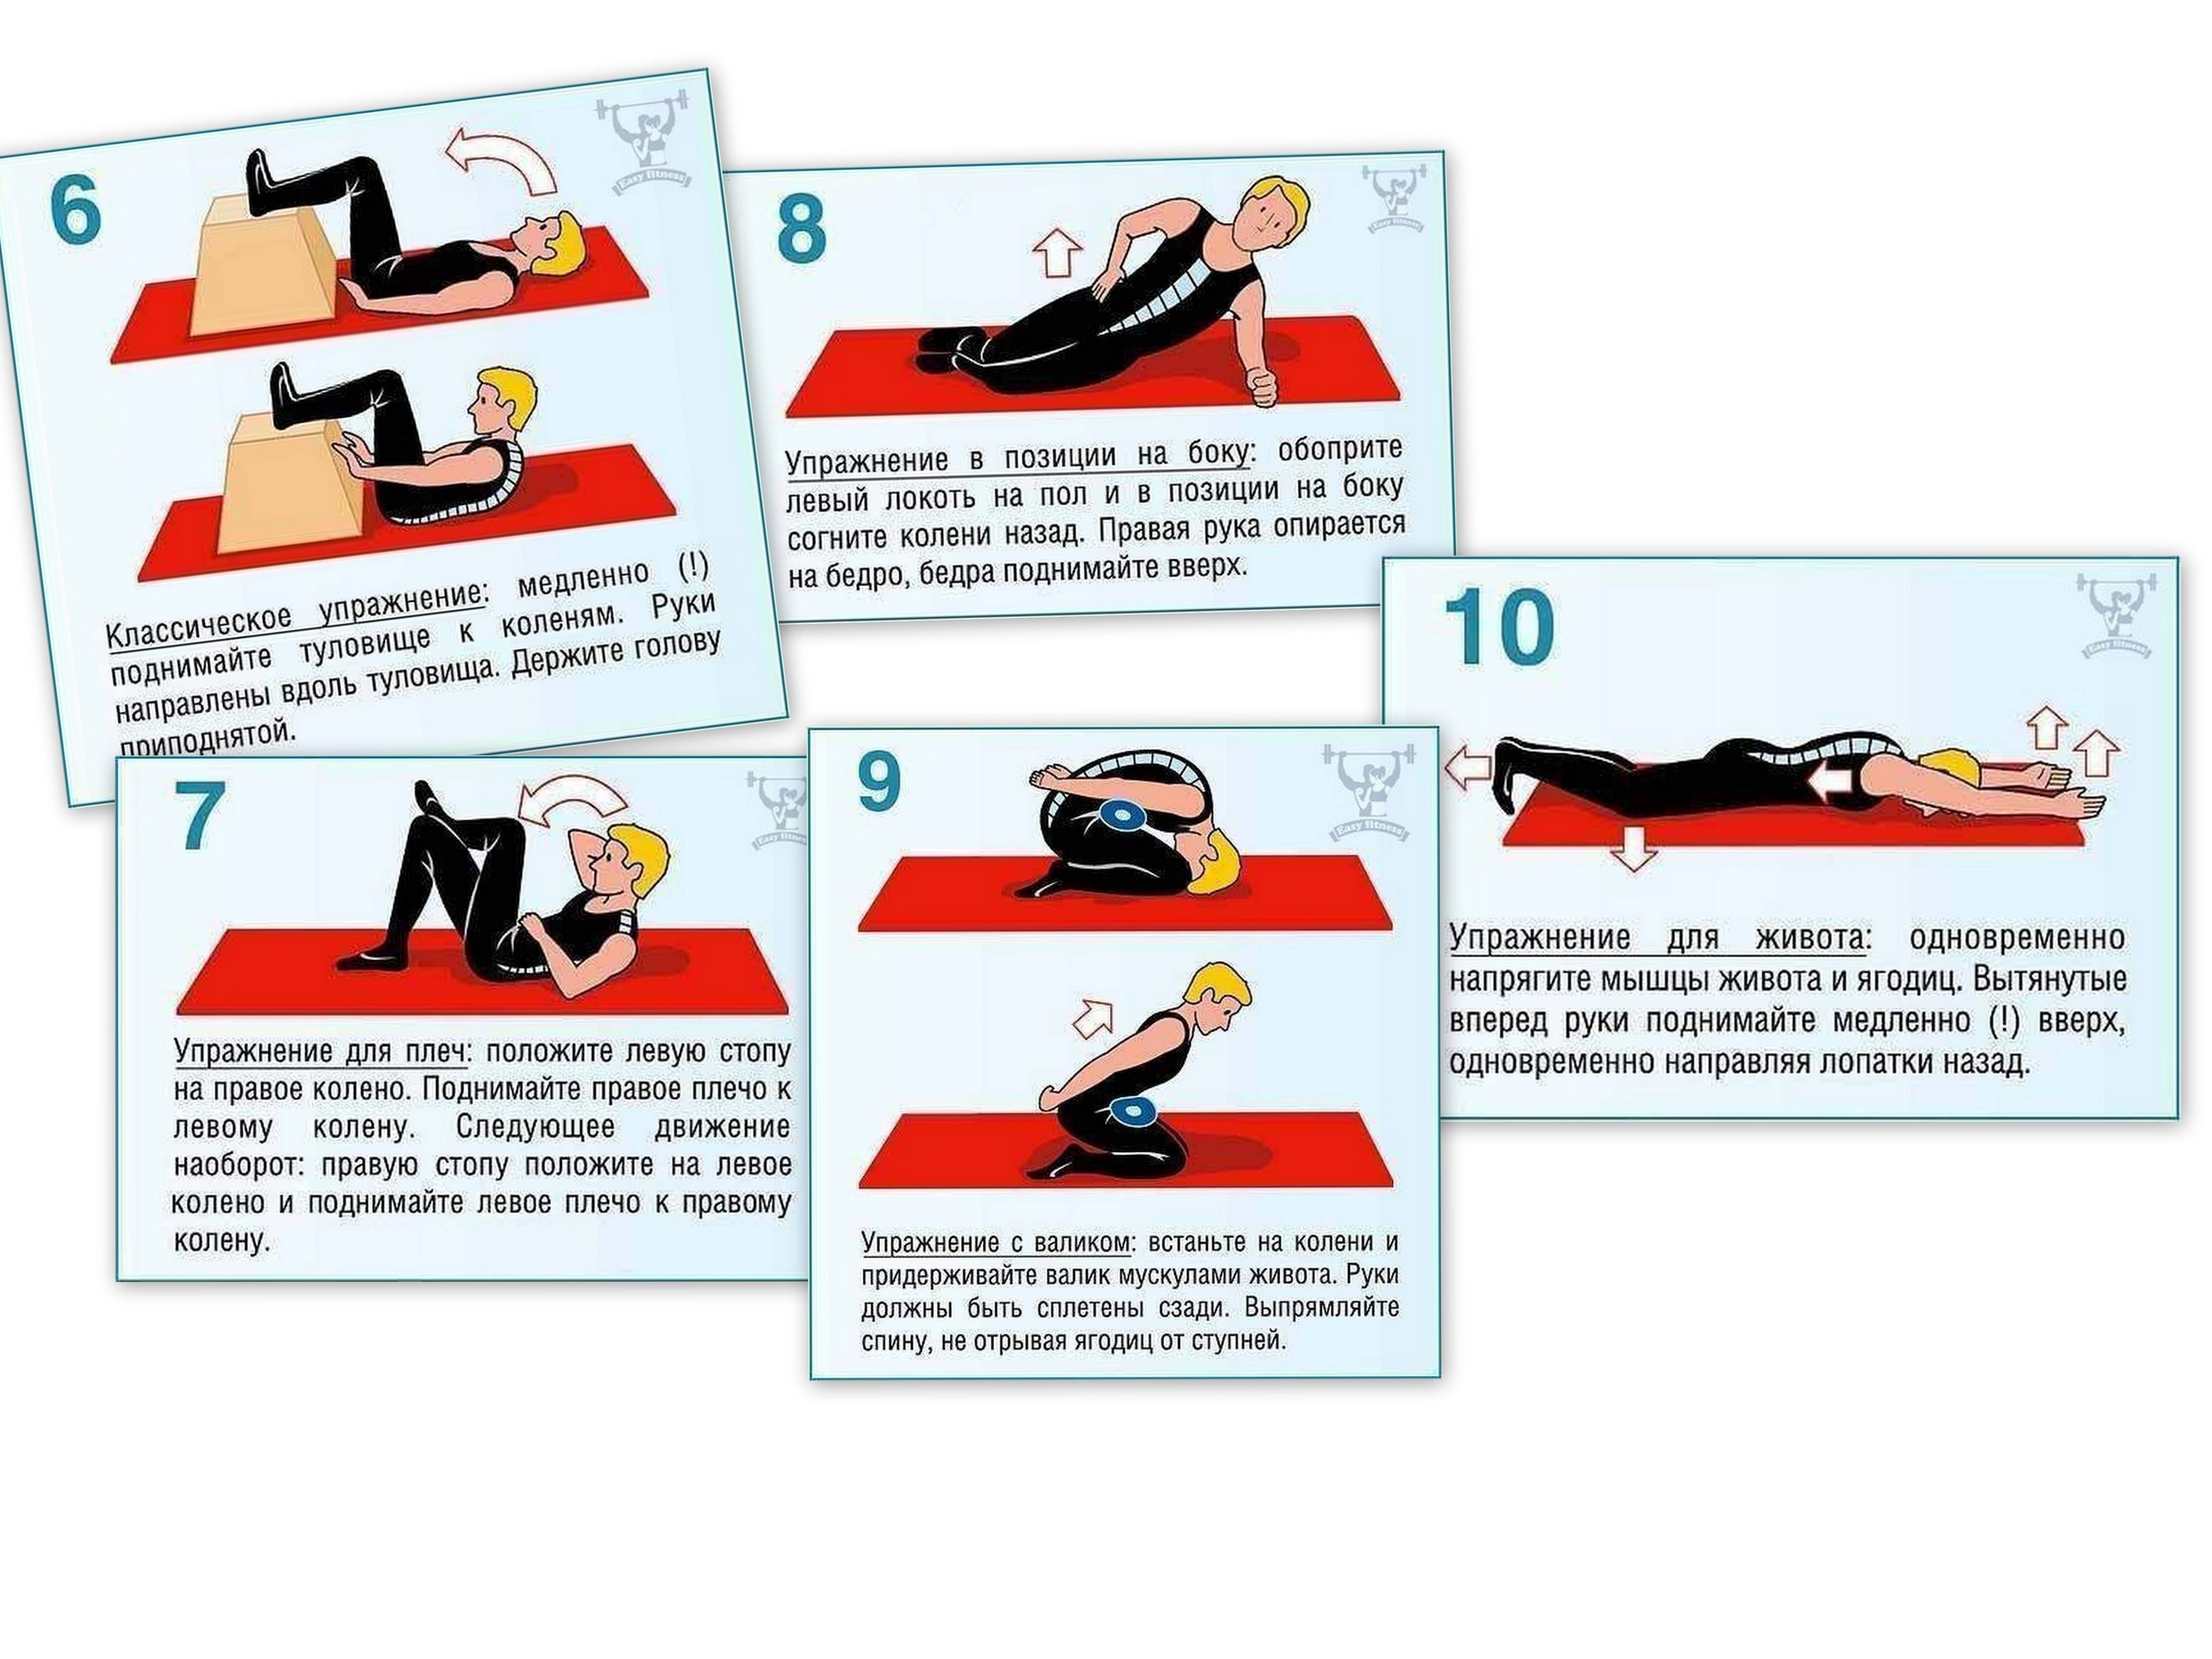 6 упражнений при боли в спине и шее